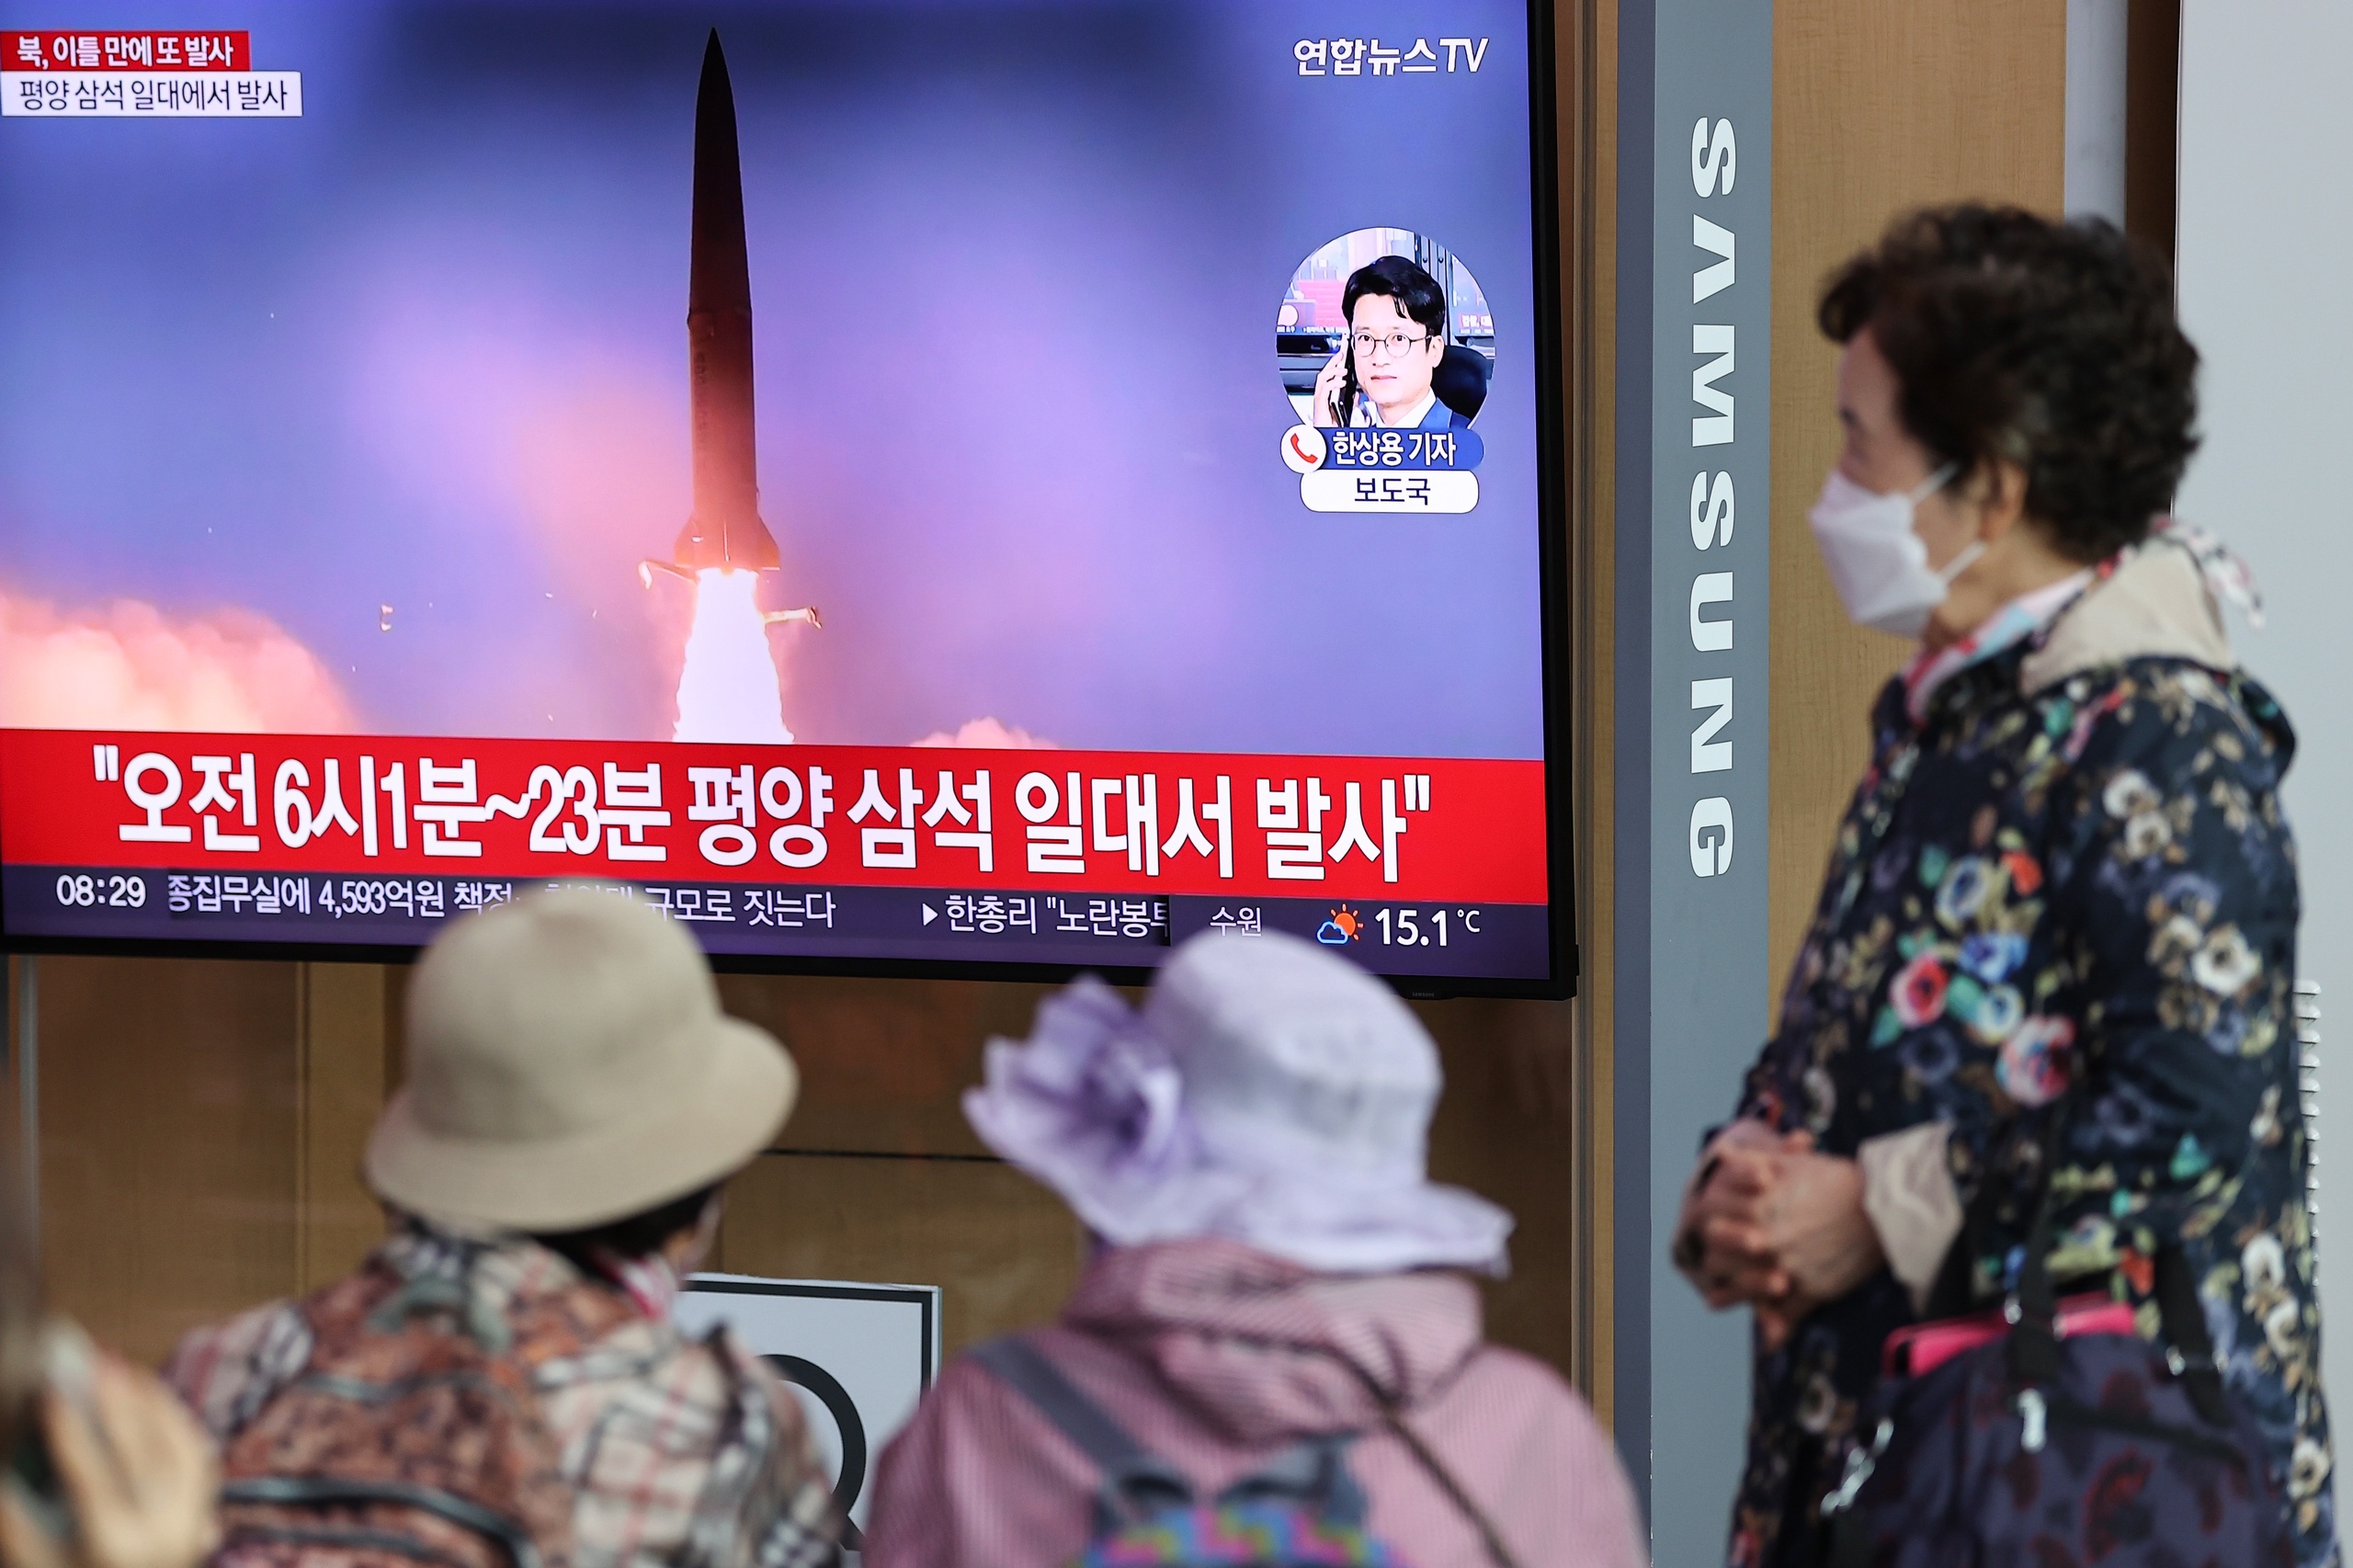 Enkele dagen nadat Noord-Korea een raket afvuurde die over Japan heen vloog, heeft het regime van Kim Jong-un donderdagochtend (lokale tijd) opnieuw twee raketten afgevuurd, melden Zuid-Korea en Japan. De projectielen zouden in de Japanse Zee zijn neergekomen, tussen Noord-Korea en Japan.